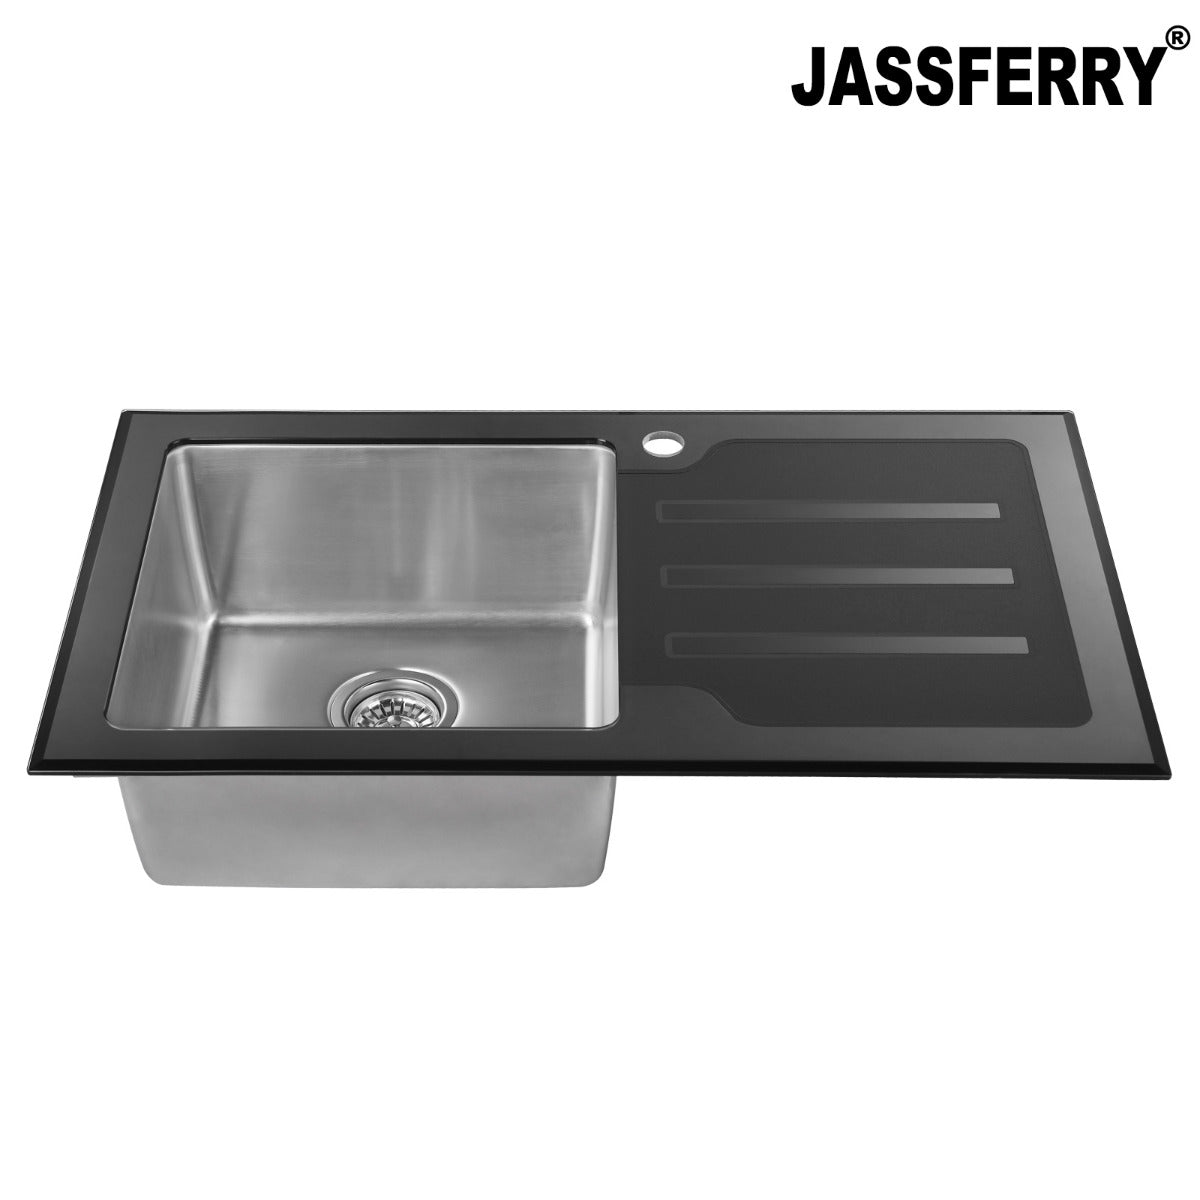 JassferryJASSFERRY Kitchen Sink Stainless Steel Single Bowl Black Glass Righthand DrainerKitchen Sinks